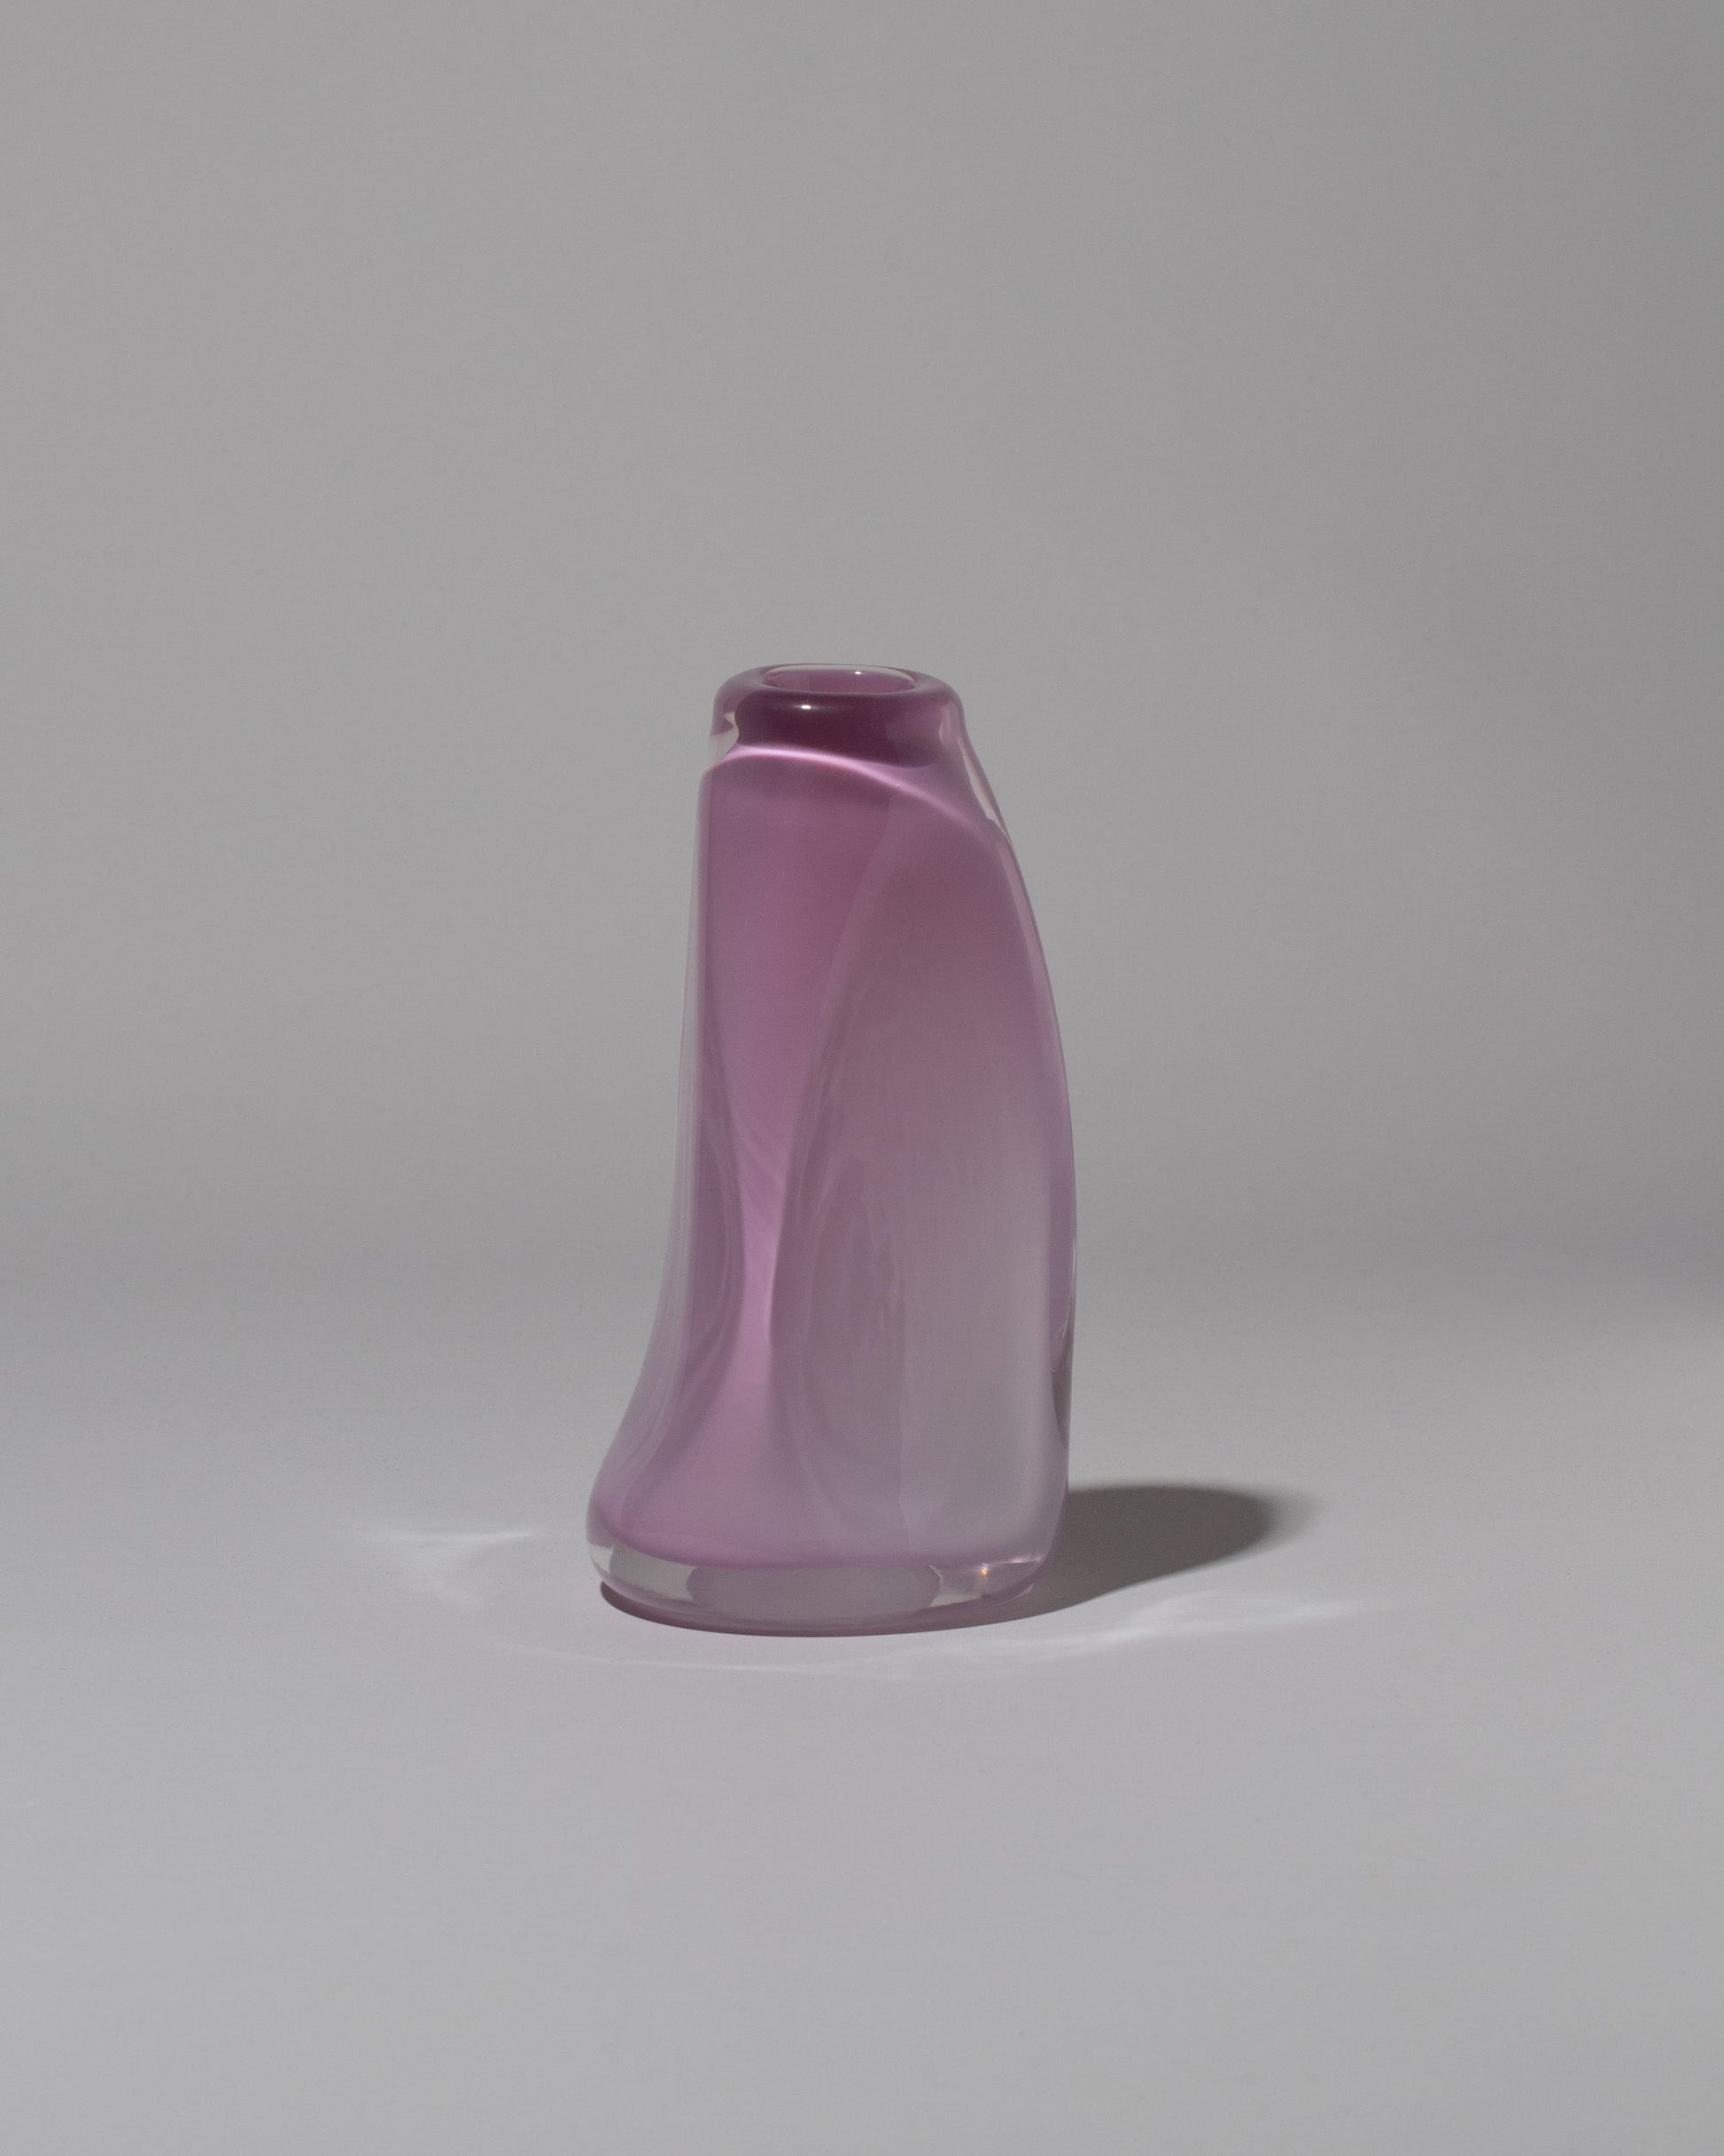 BaleFire Glass Large Lilac Suspension Vase on light color background.